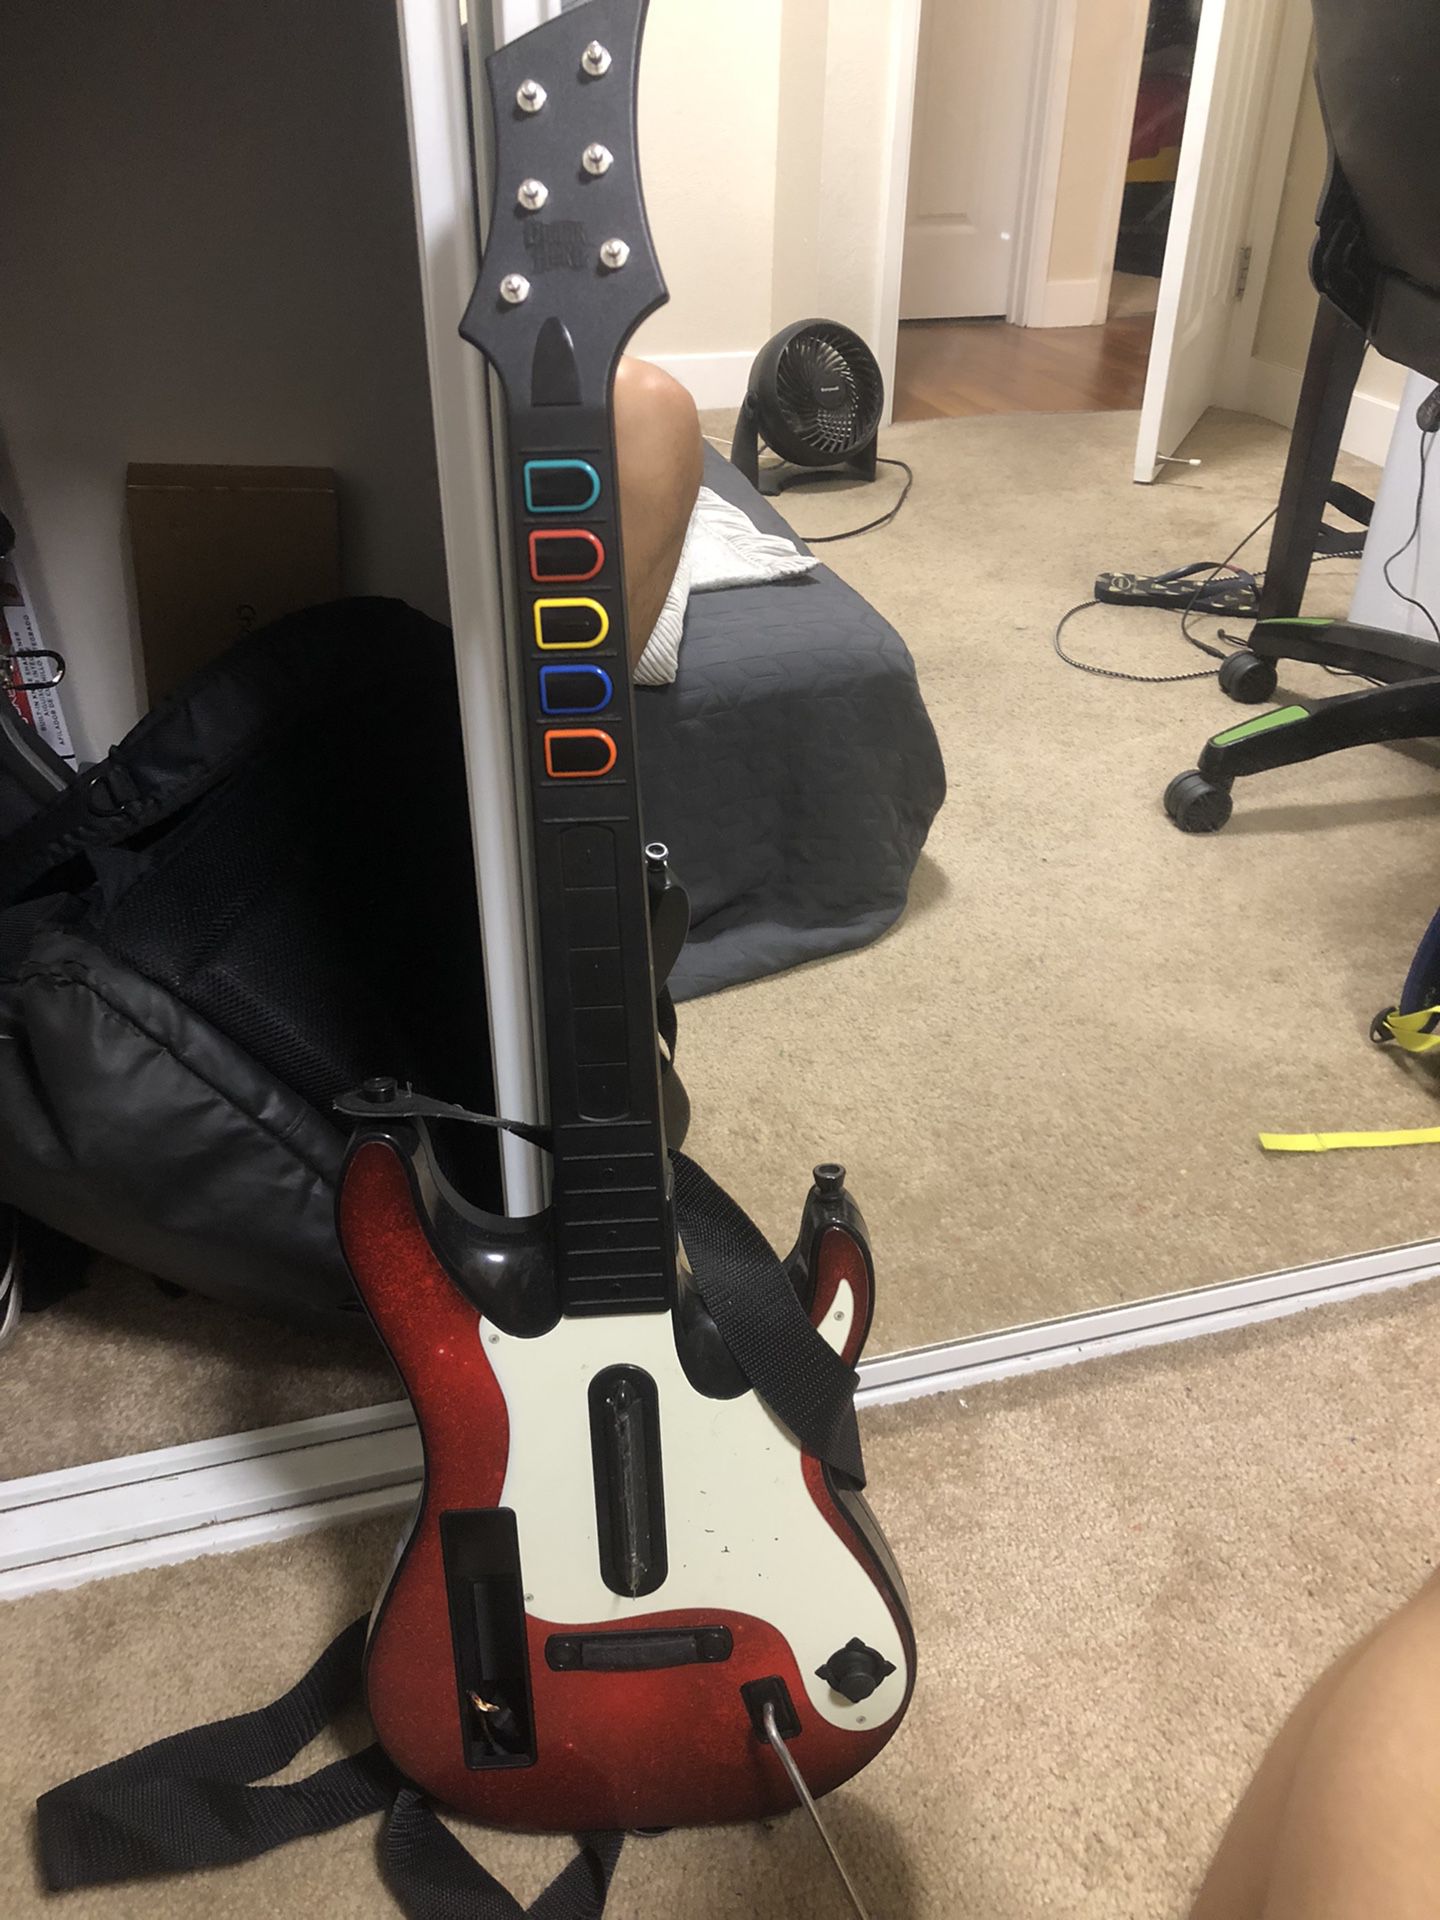 Guitar Hero 5 Guitar